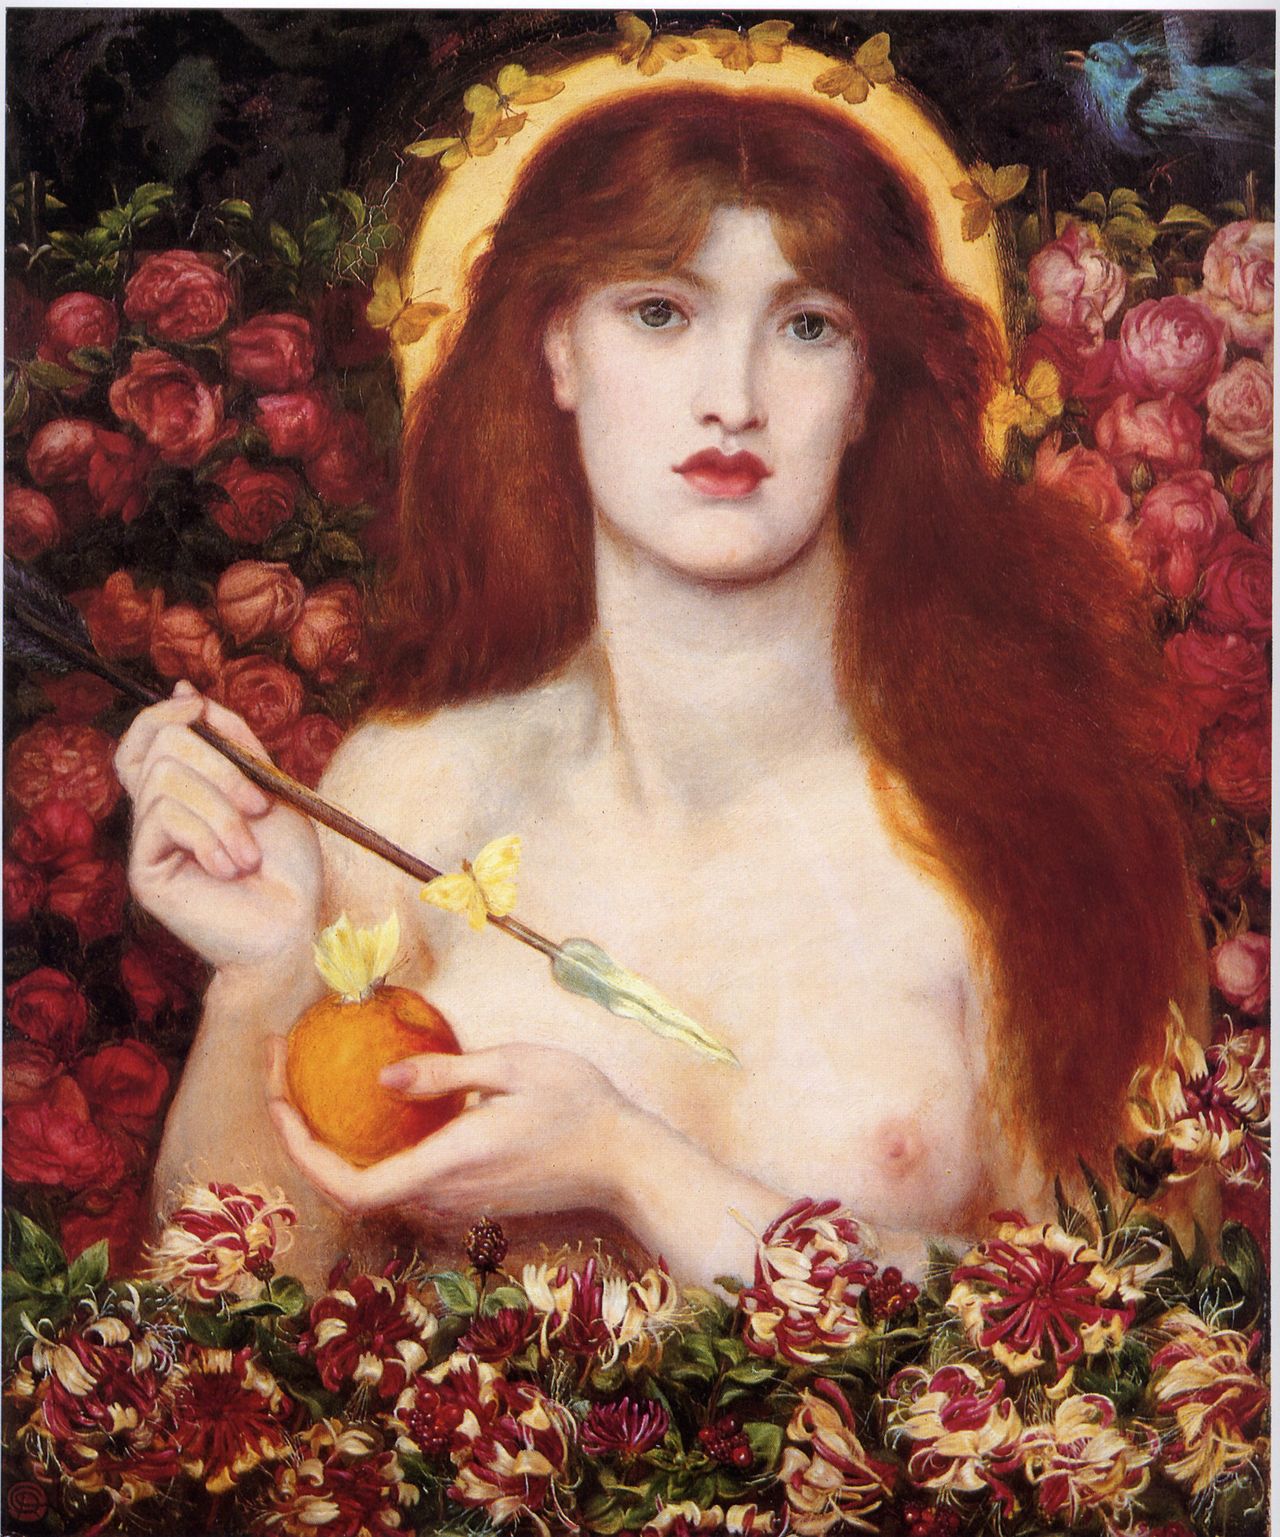 Dante Gabriel Rossetti «Venus Verticordia» (η Αφροδίτη που μεταστρέφει τις καρδιές (1868)